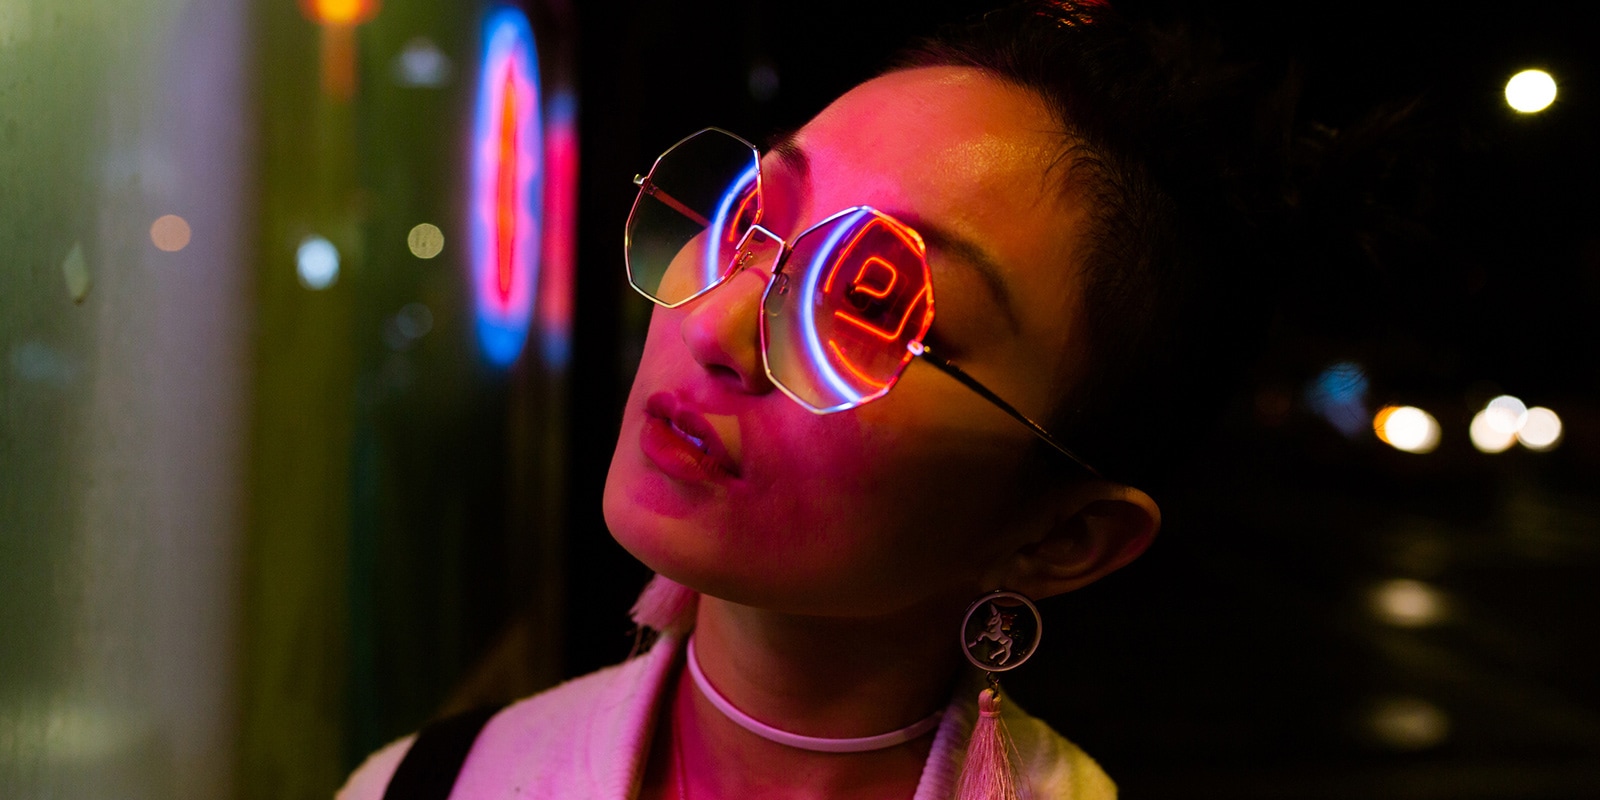 صورة مقرّبة لامرأة ترتدي نظارة شمسية تنعكس عليها أضواء النيون.